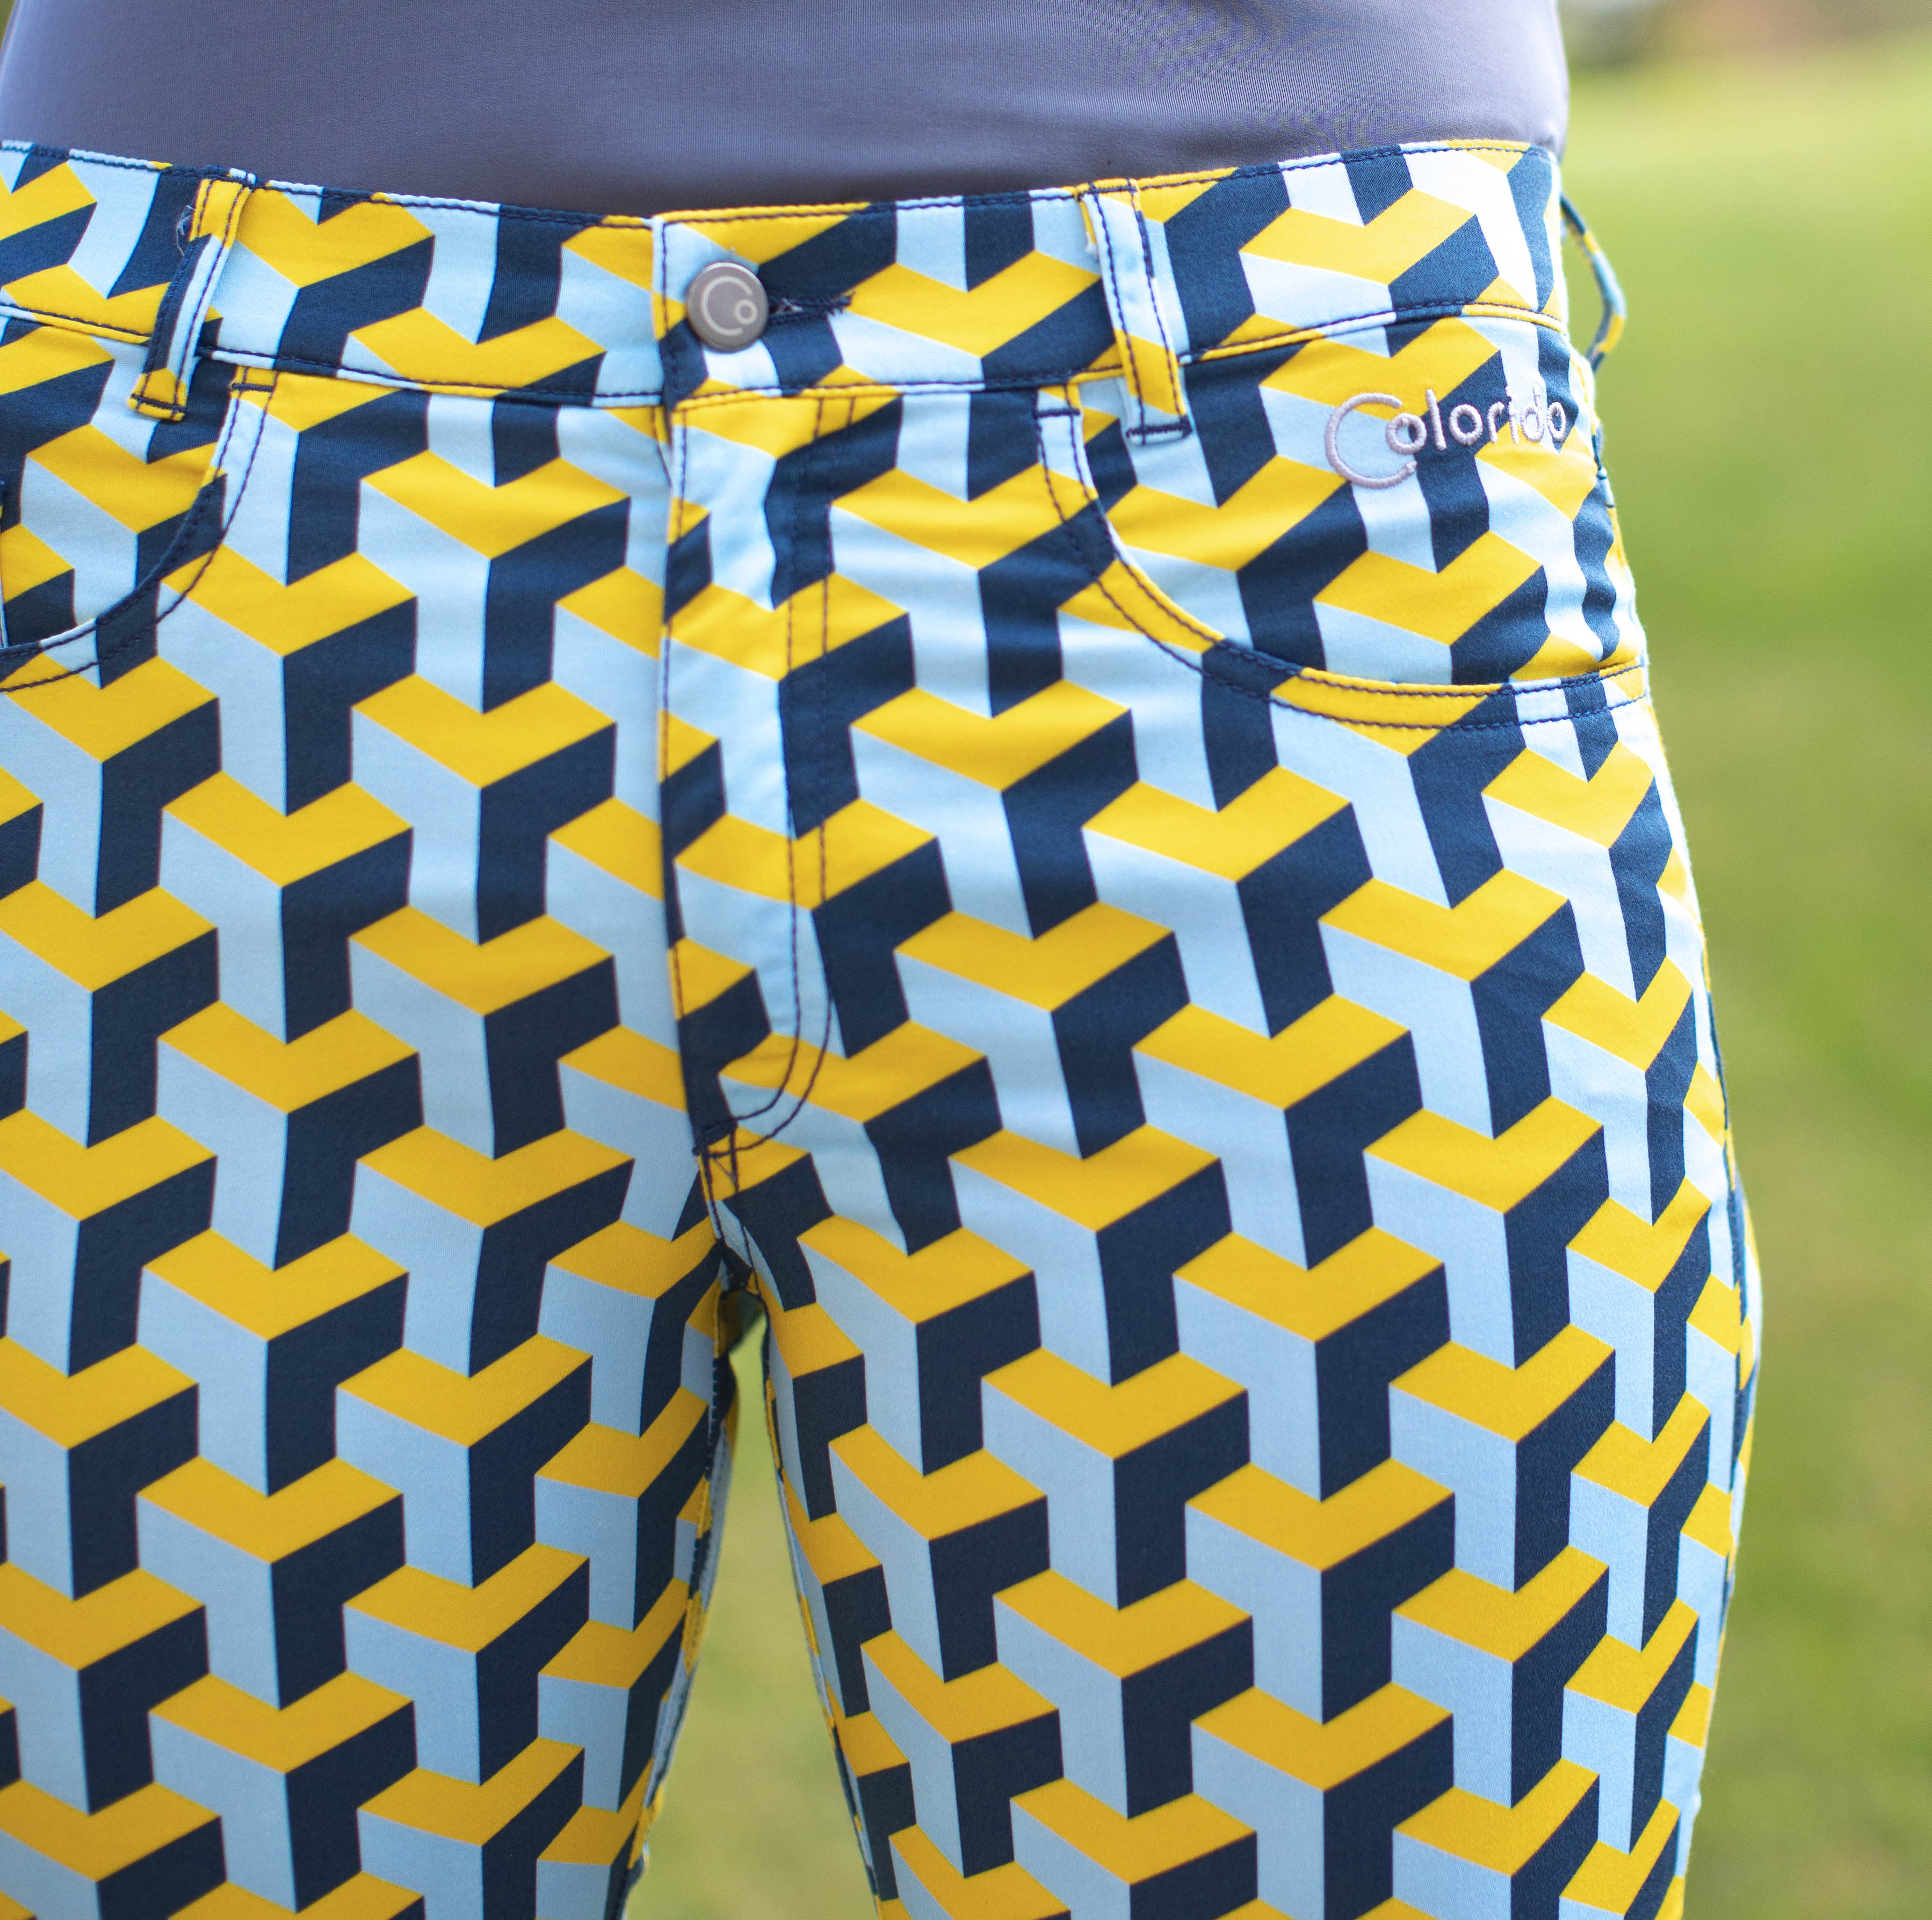 Dámské žluto-modré golfové kalhoty Colorido Velikost: XL, Délka nohavic: KLASICKÁ, Barva: ŽLUTÁ